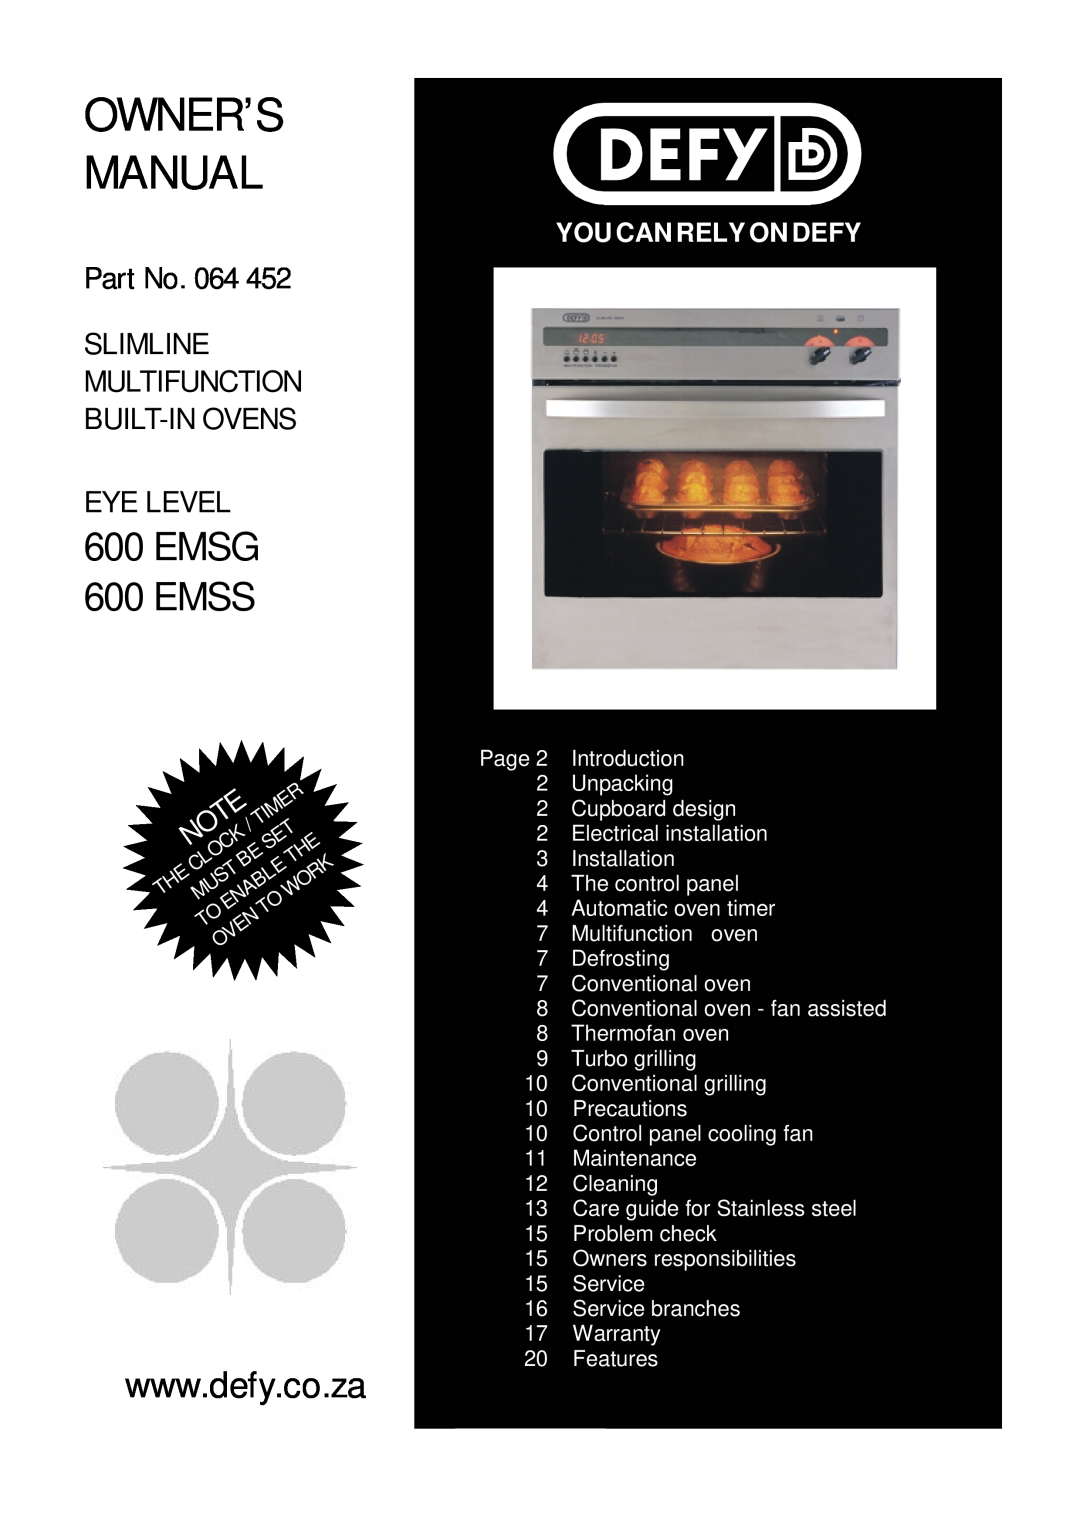 Defy Appliances 600 EMSG owner manual Slimline Multifunction Built-Inoven, Emsg, Contents 